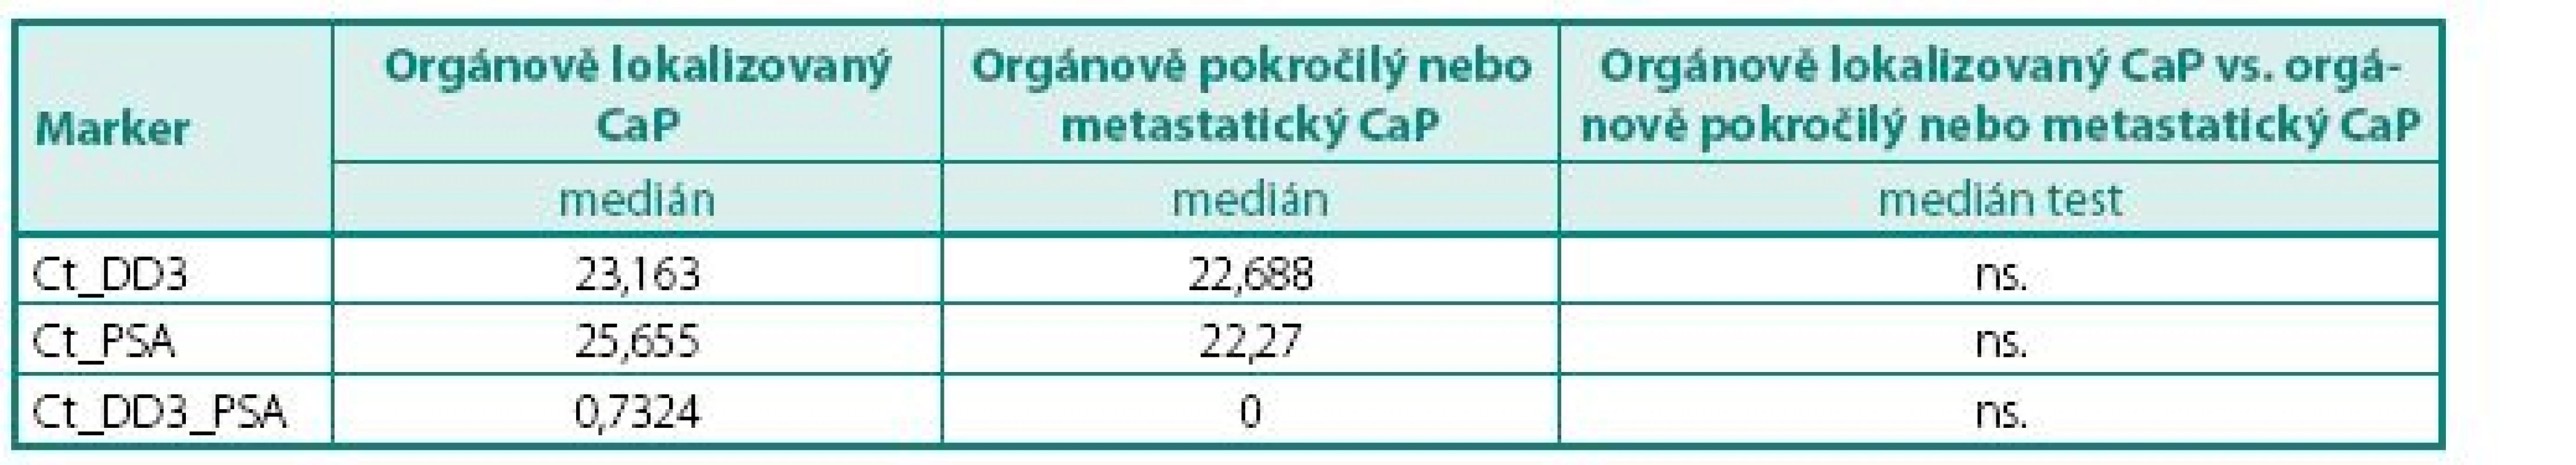 Hodnoty DD3<sup>PCA3</sup> a PSA mRNA exprese ve skupině pacientů s CaP ve vztahu k TNM klasifikaci (orgánově lokalizovaný vs. orgánově pokročilý nebo metastatický karcinom)
Table 5. The values of DD3<sup>PCA3</sup> and PSA mRNA expression in group PCa according to TNM classification (organ confined vs. local advanced and metastatic PCa